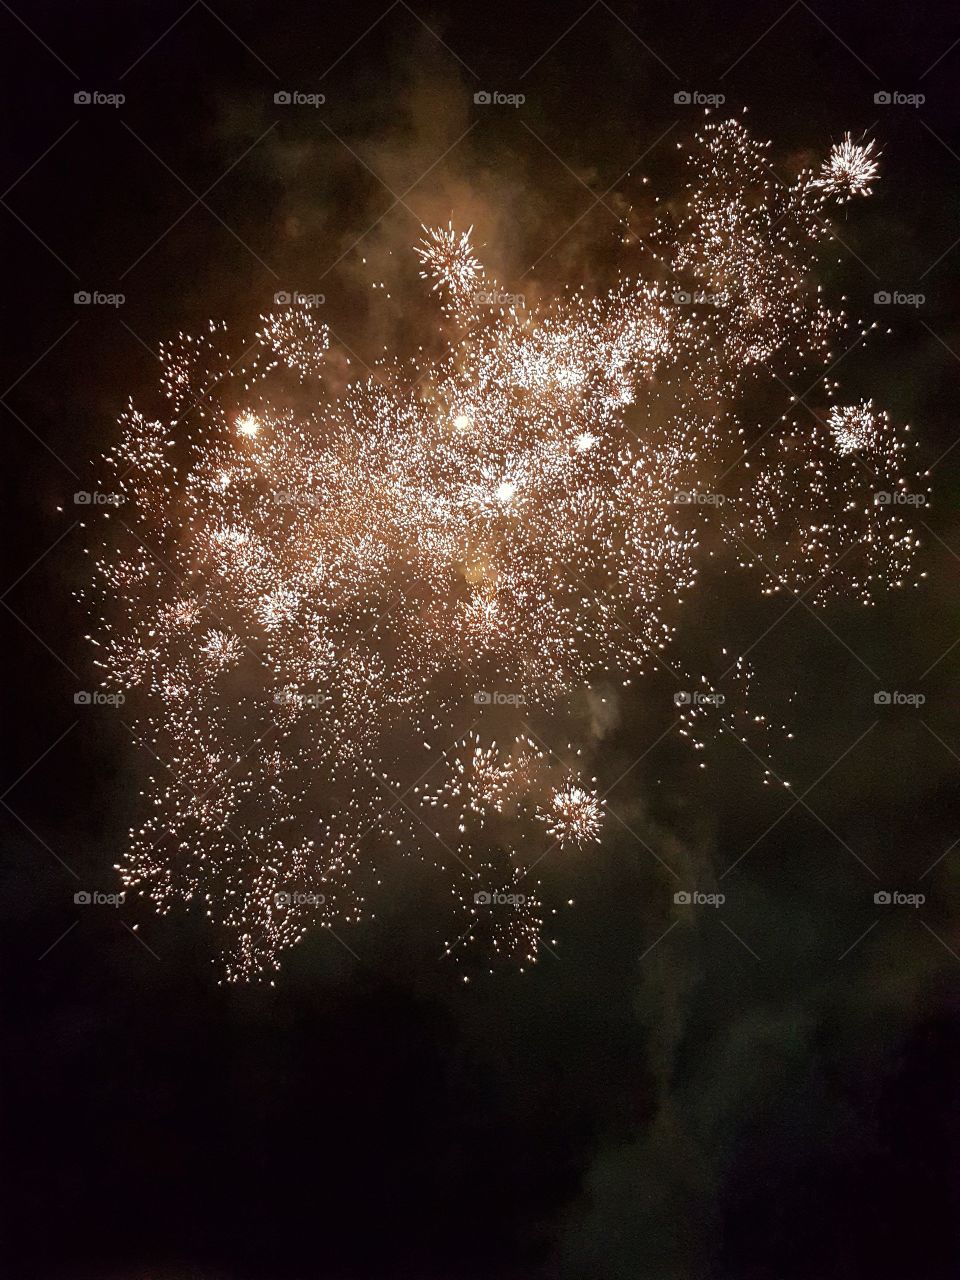 Fireworks, Nowy Konik